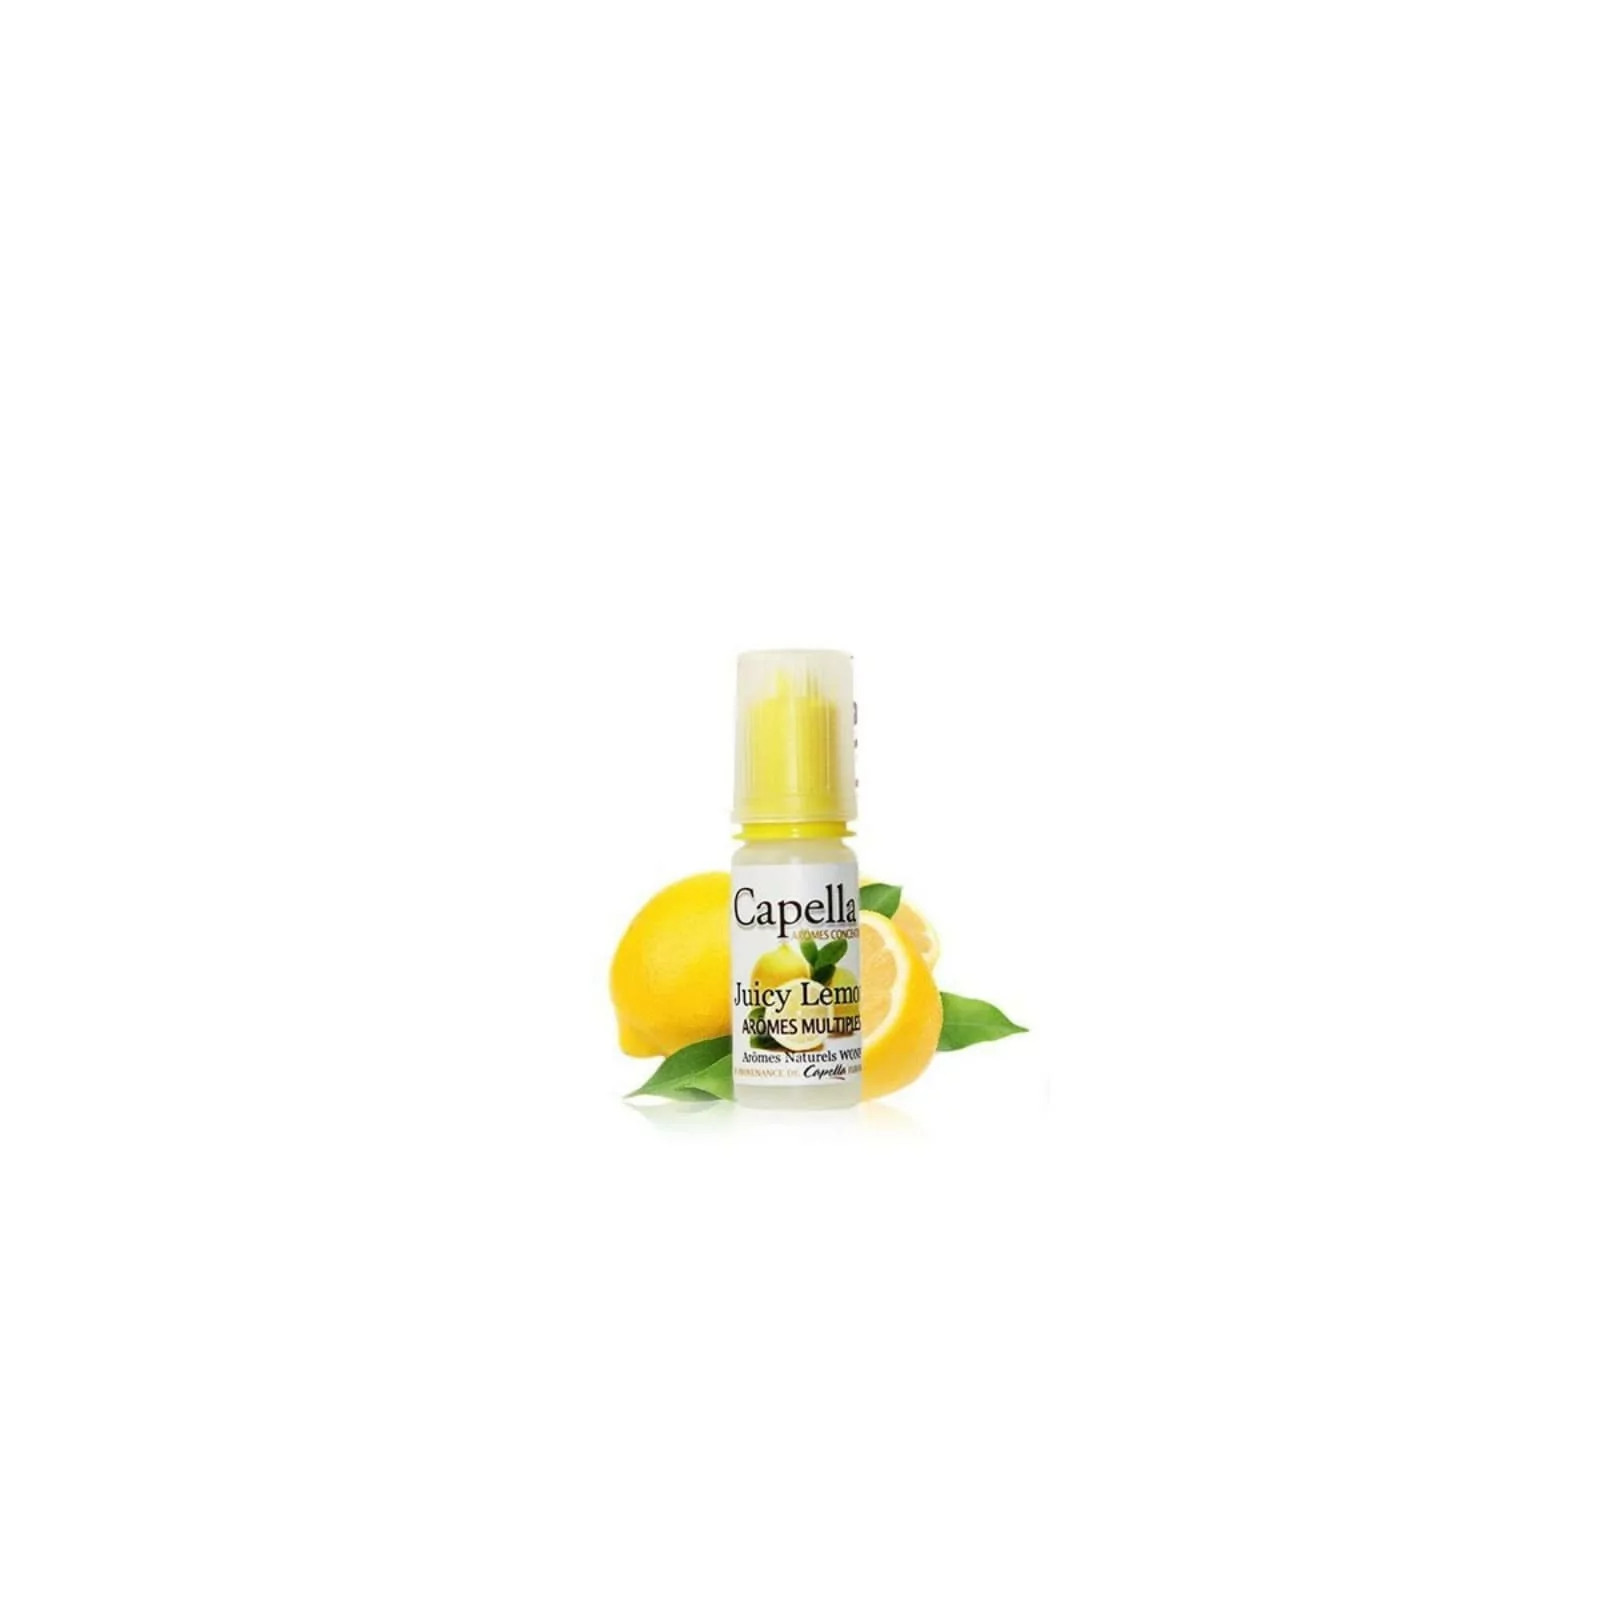 Concentré Juicy Lemon - Capella